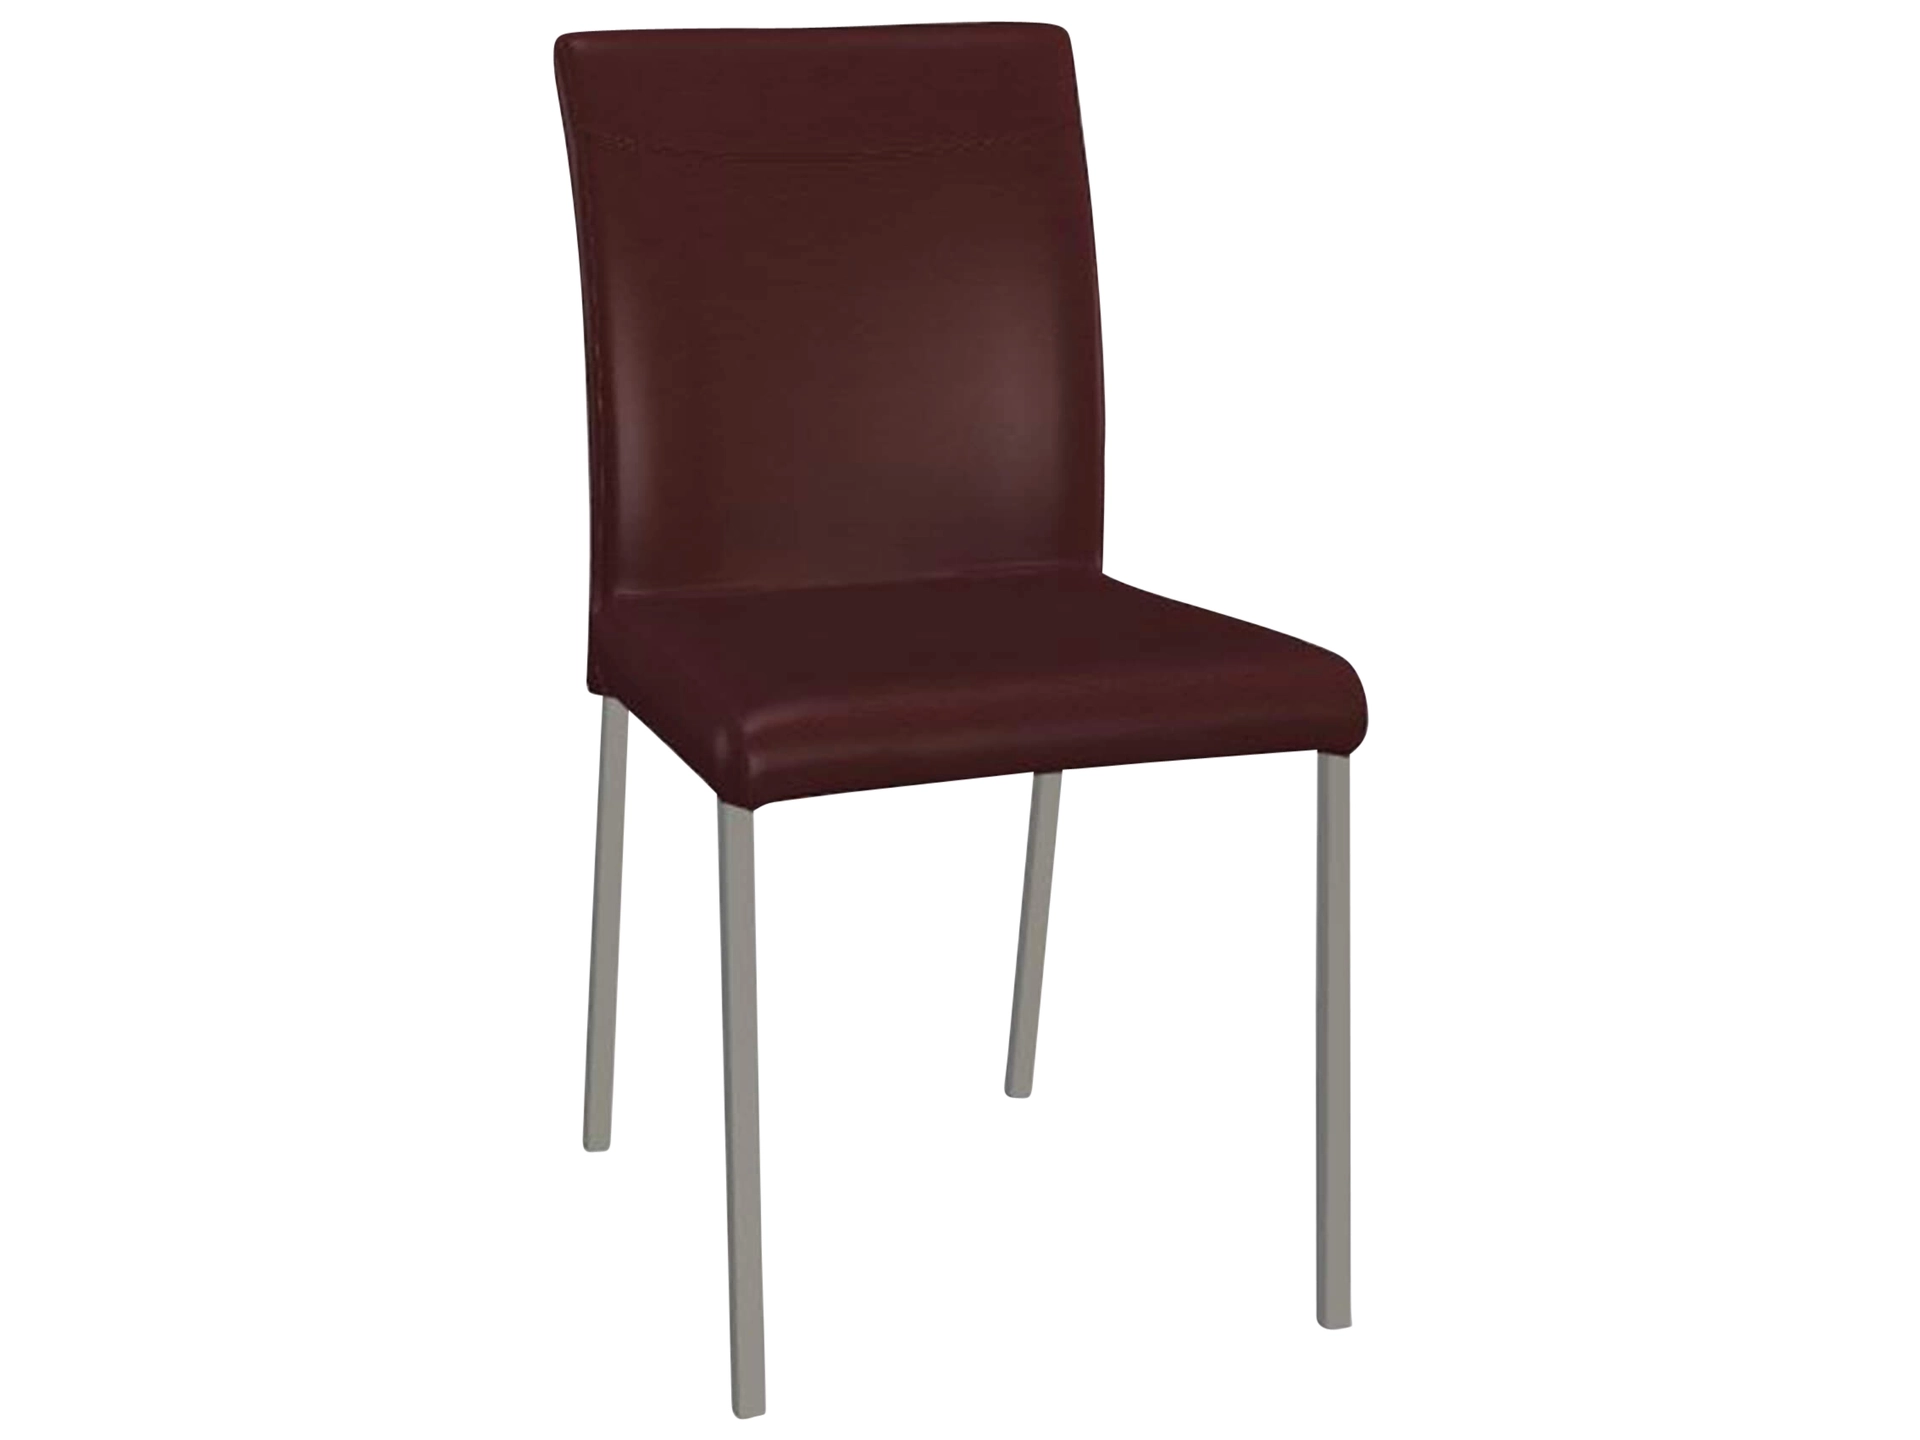 Stuhl Leicht Premium Trendstühle / Farbe: Bordeaux / Material: Leder